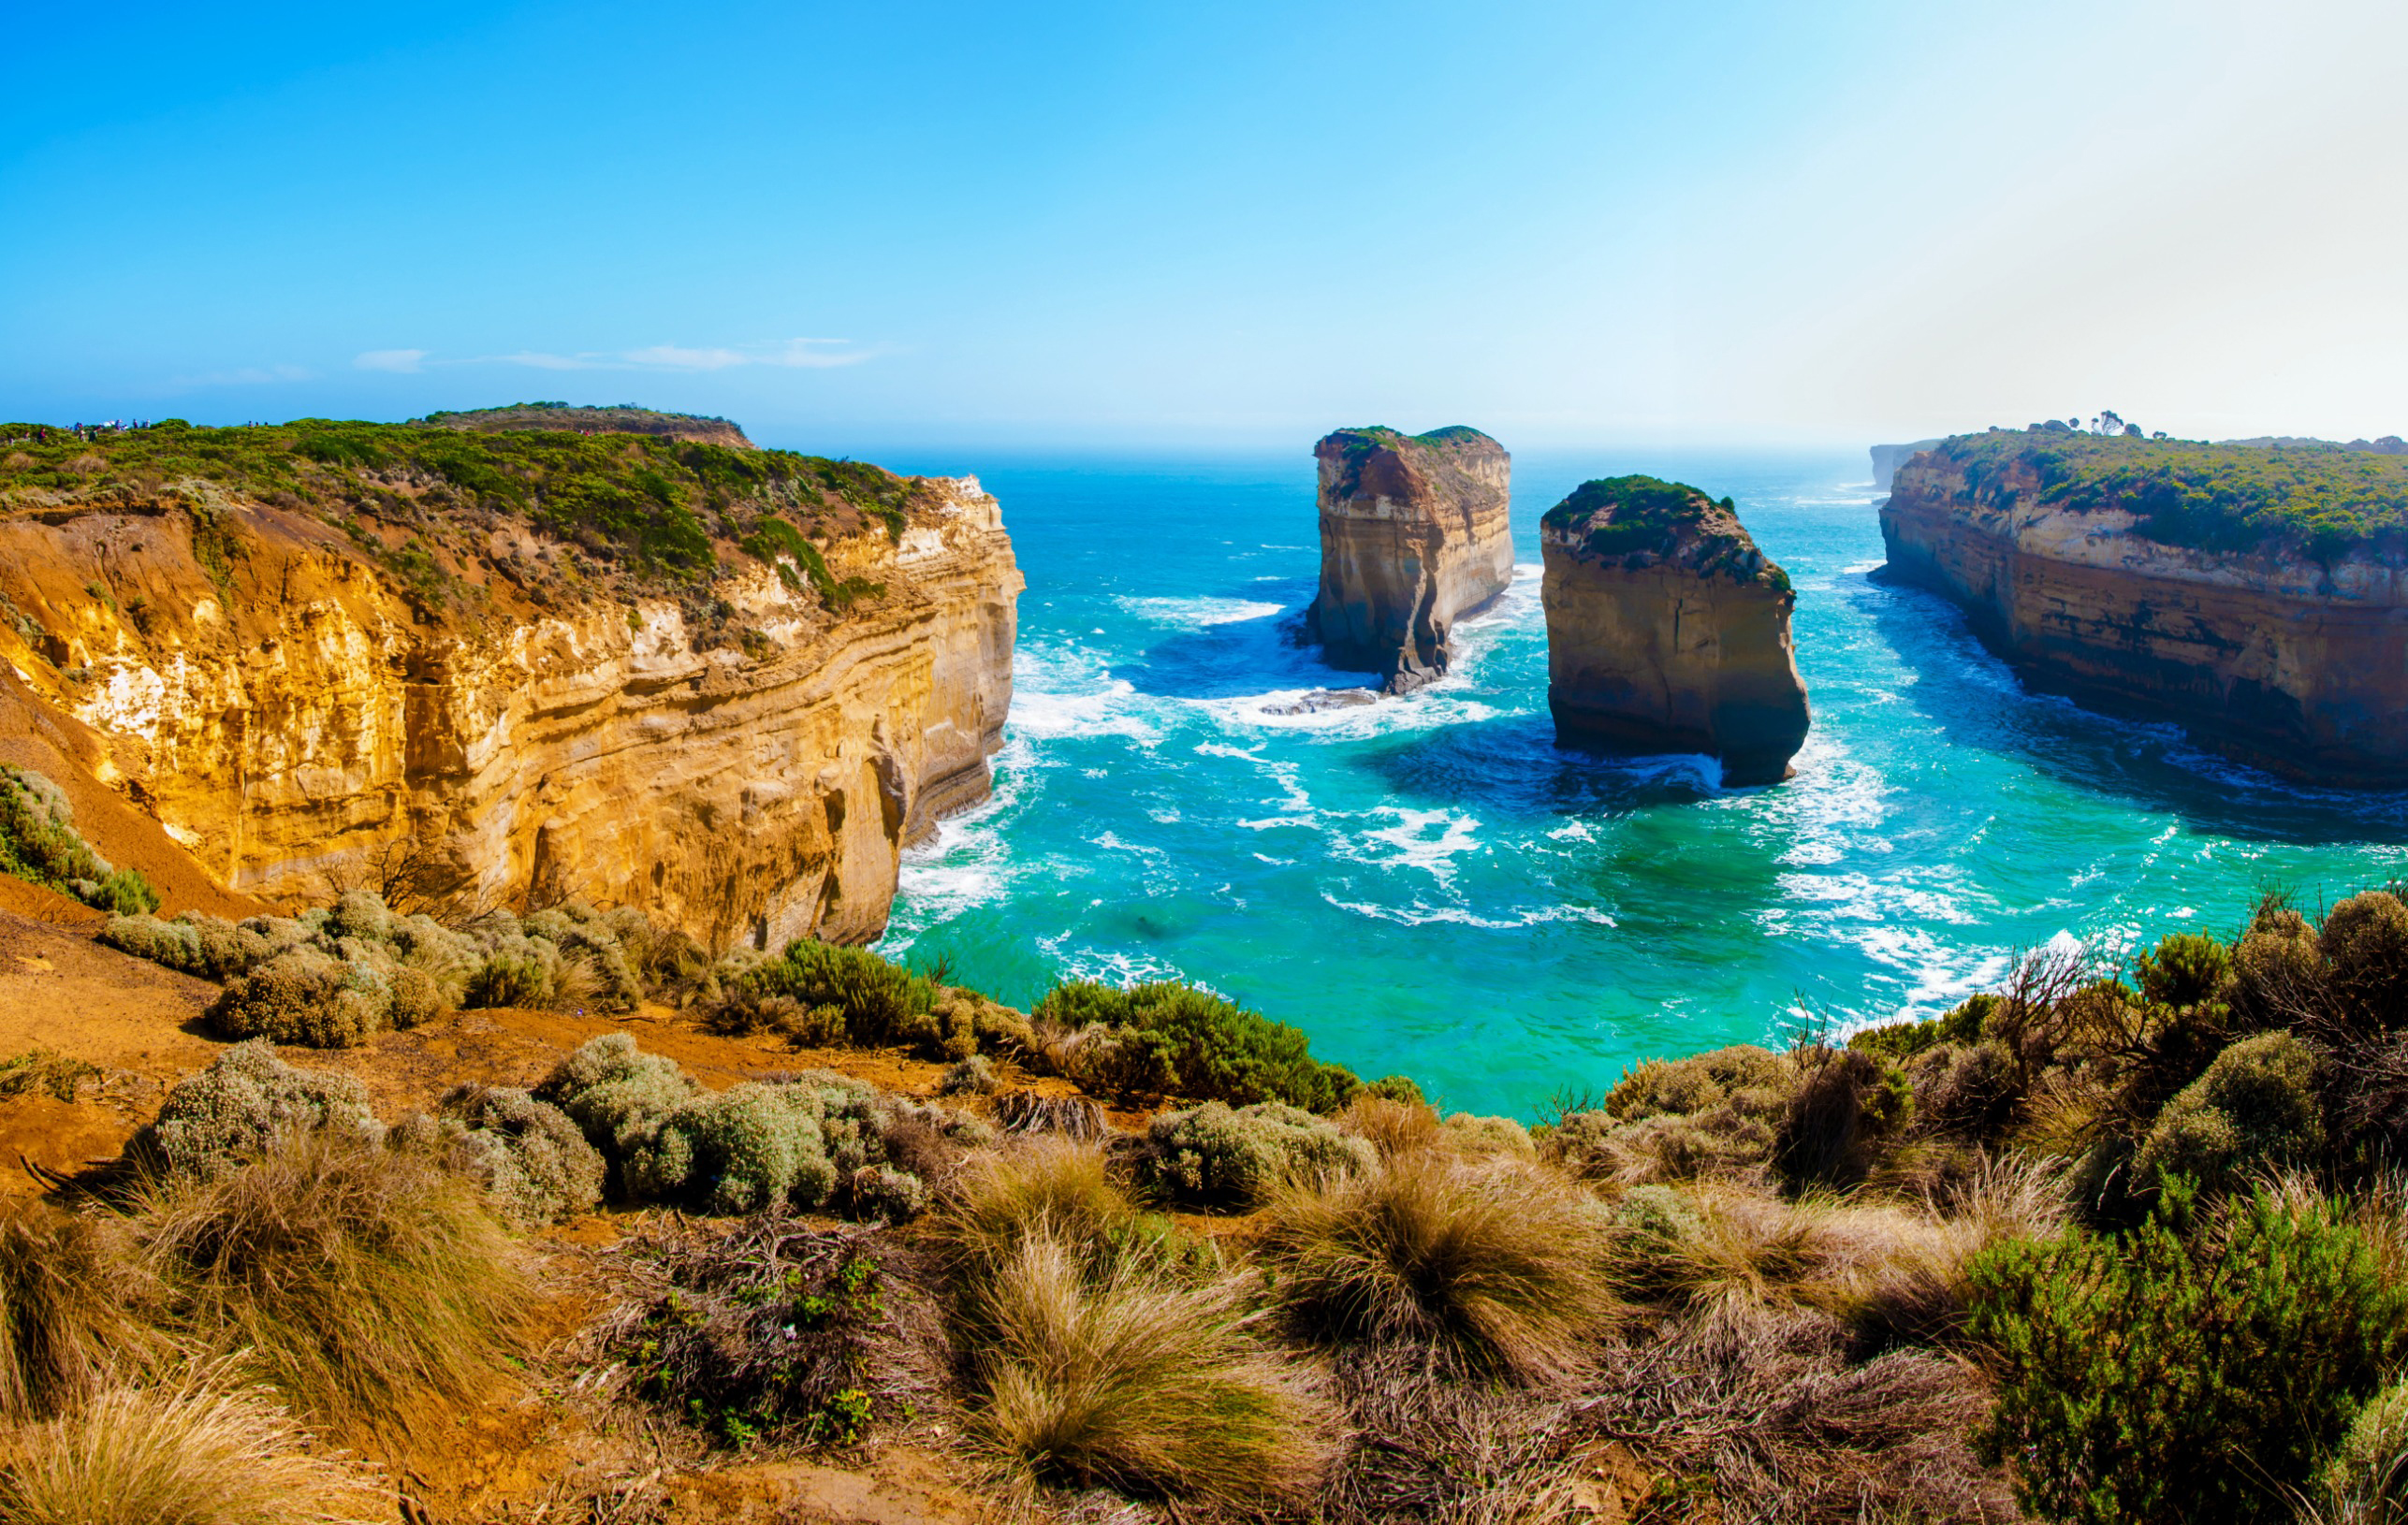 Resa till Australien - Panoramautsikt över de imponerande kalkstensklipporna och turkosblå havet längs Great Ocean Road i Australien.